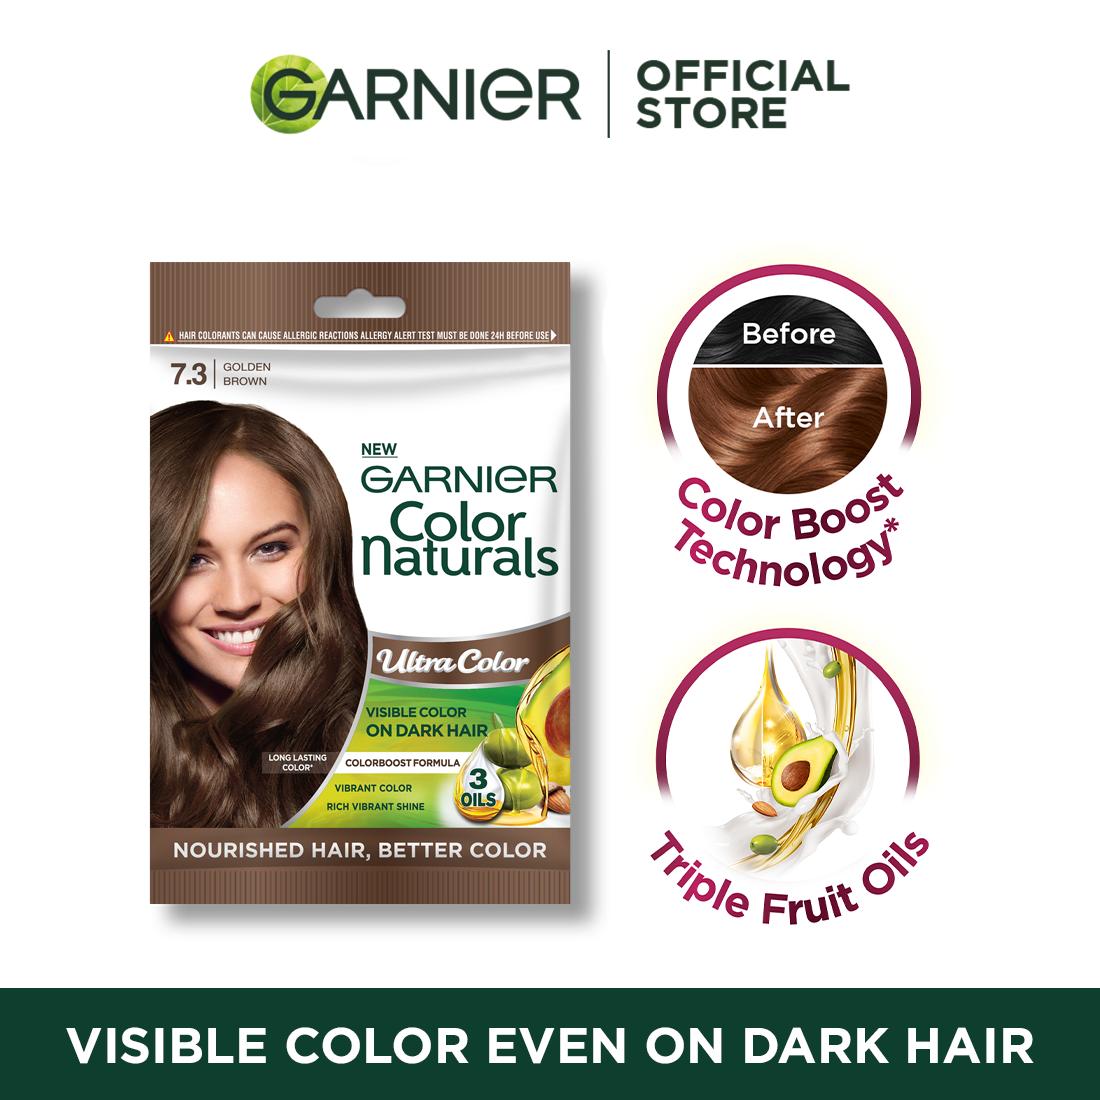 Buy Garnier Hair Coloring Online 